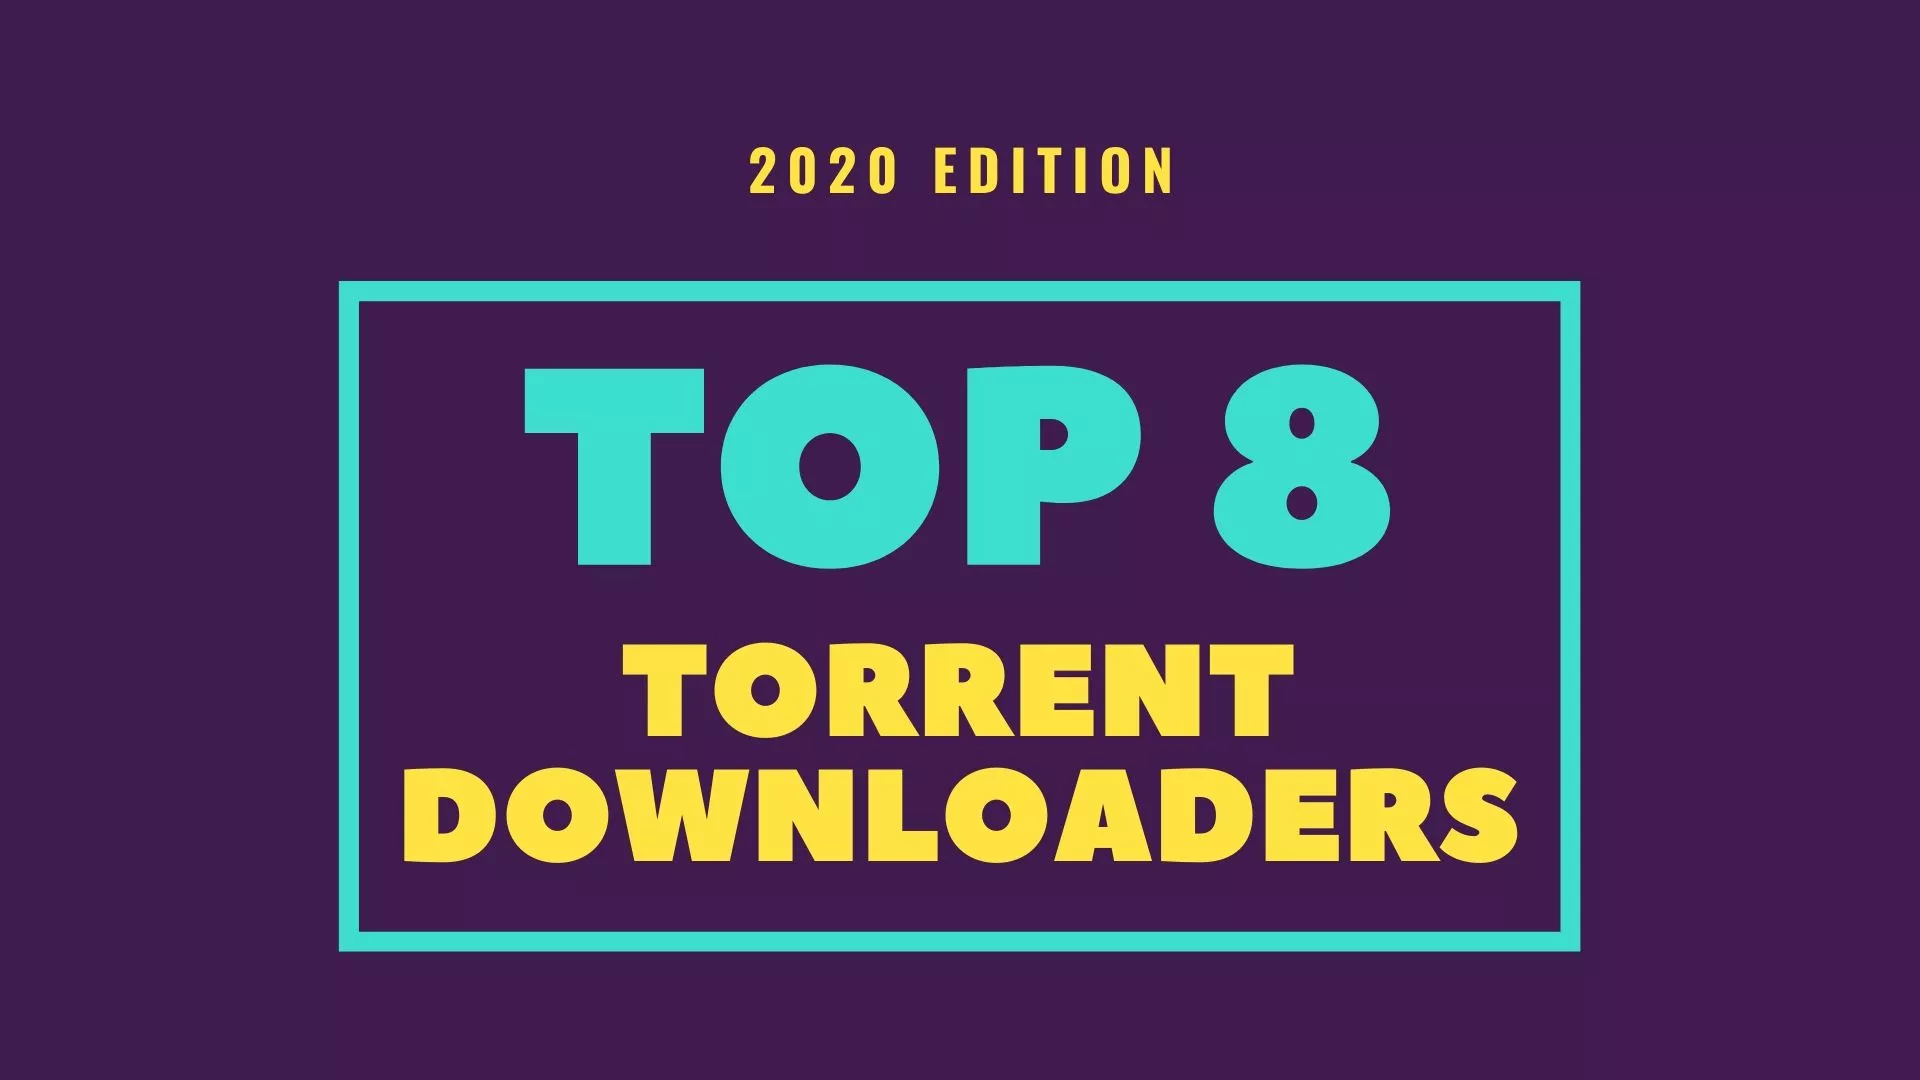 Violin Jeg accepterer det Arab 10 Best Torrent Clients For Windows To Download Torrents In 2021